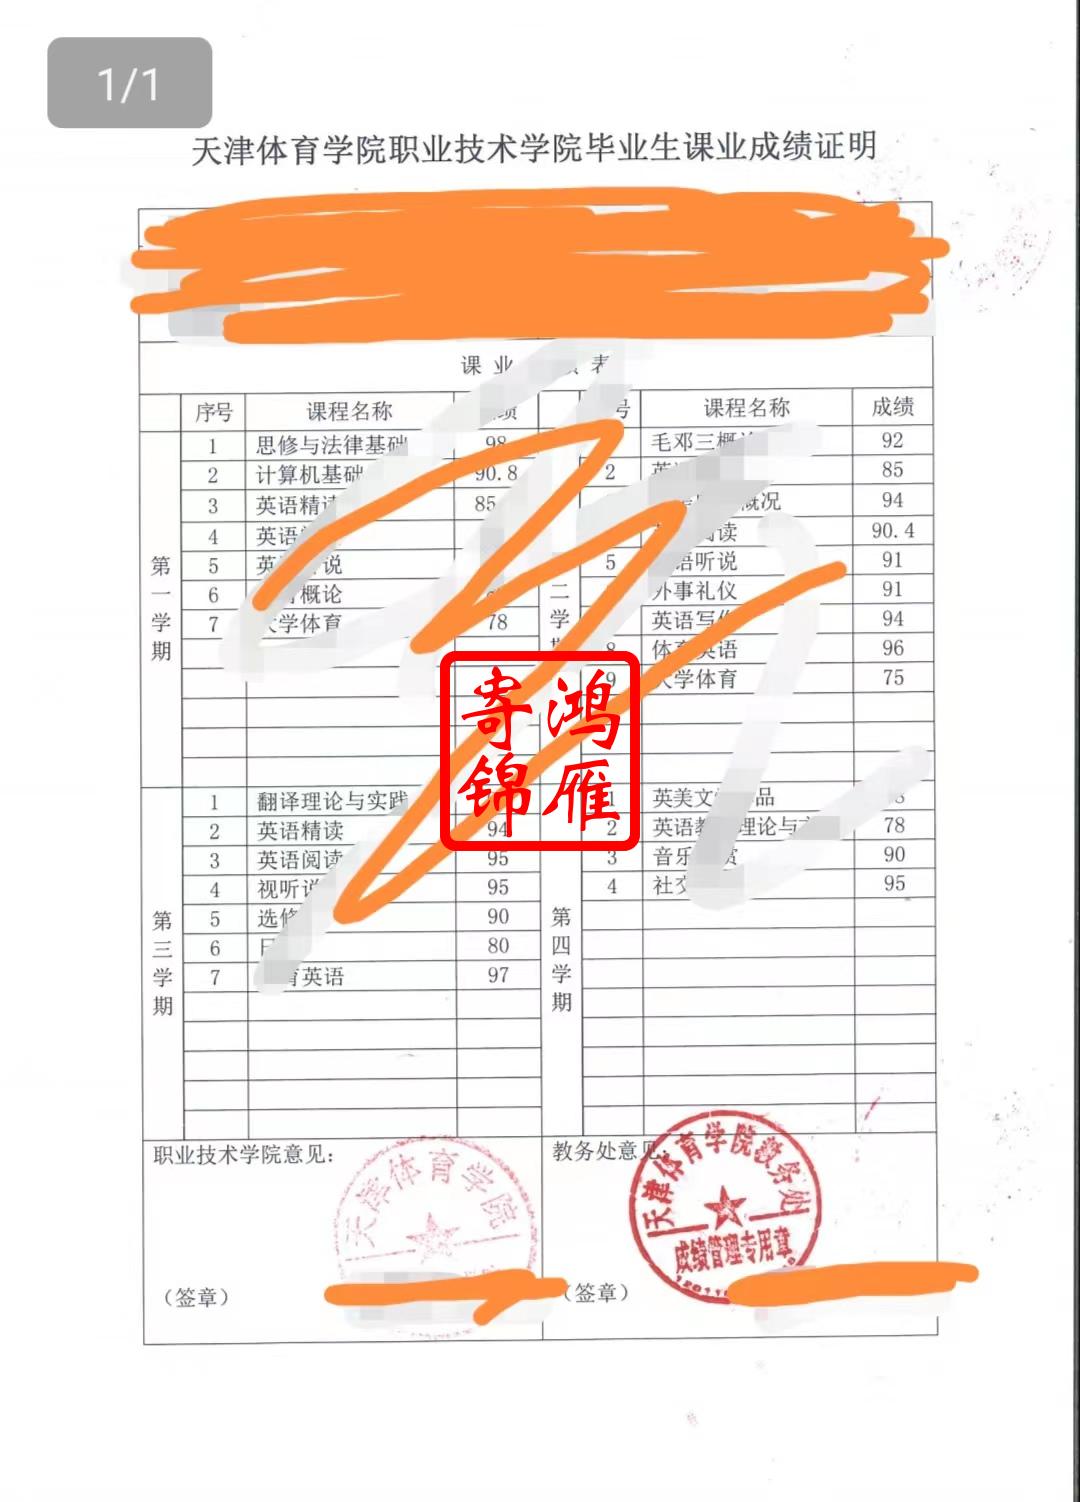 天津体育学院中英文成绩单打印案例1.jpg